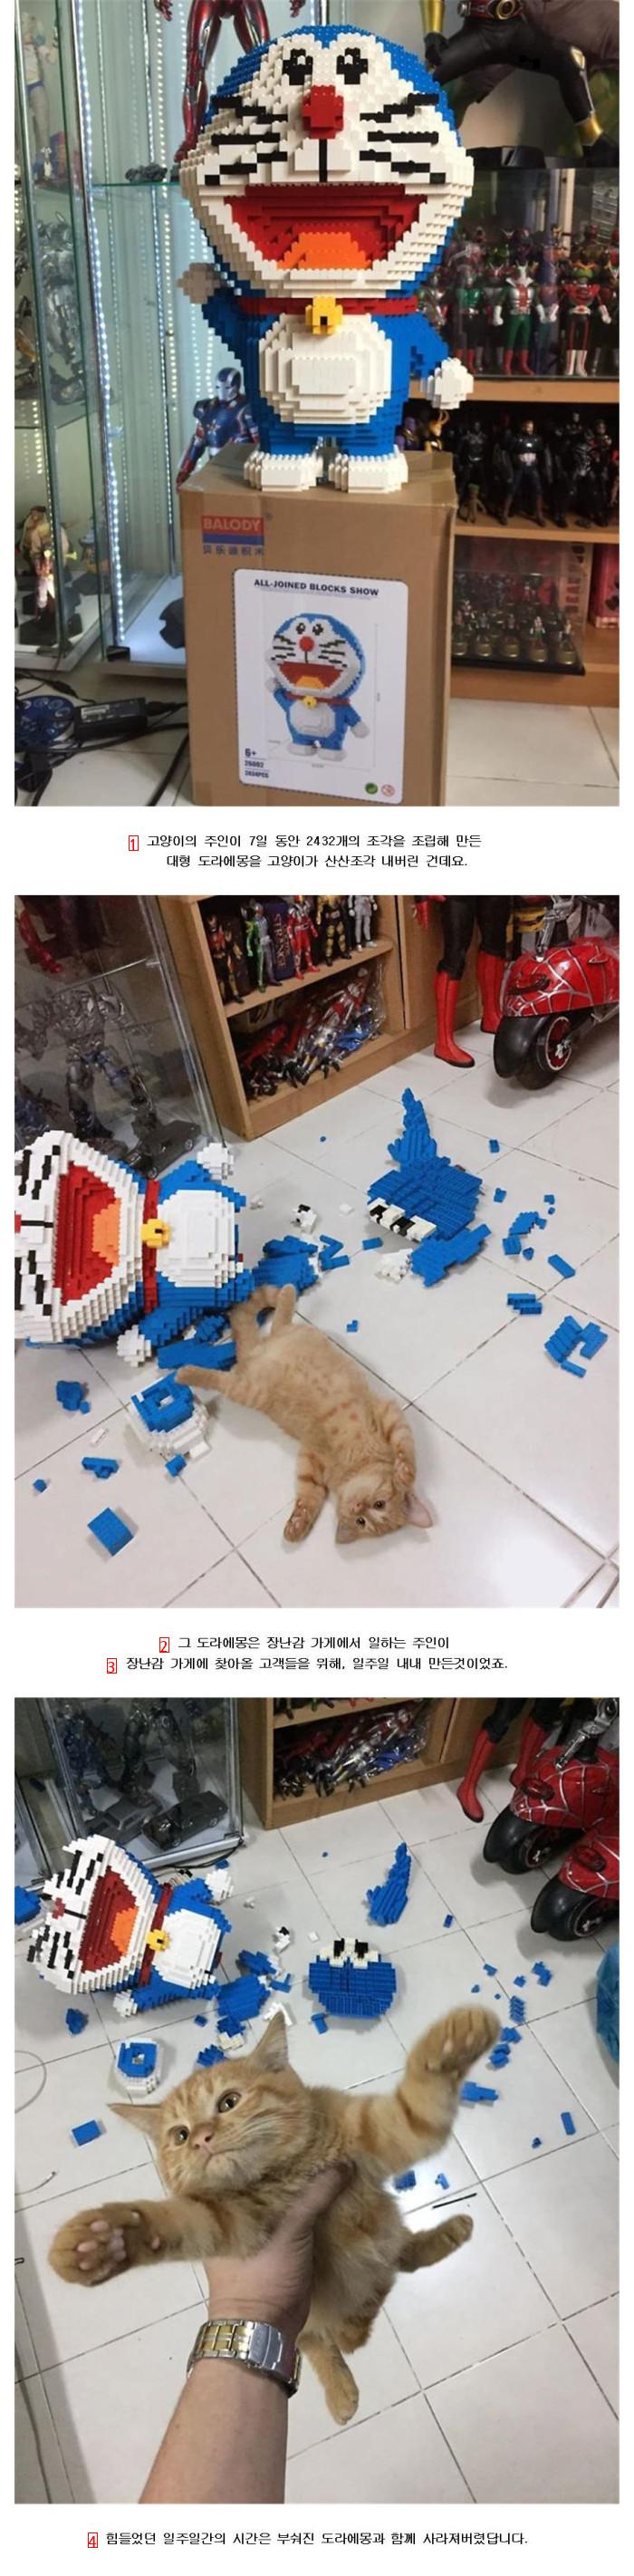 7日間作った大型レゴを猫が壊した